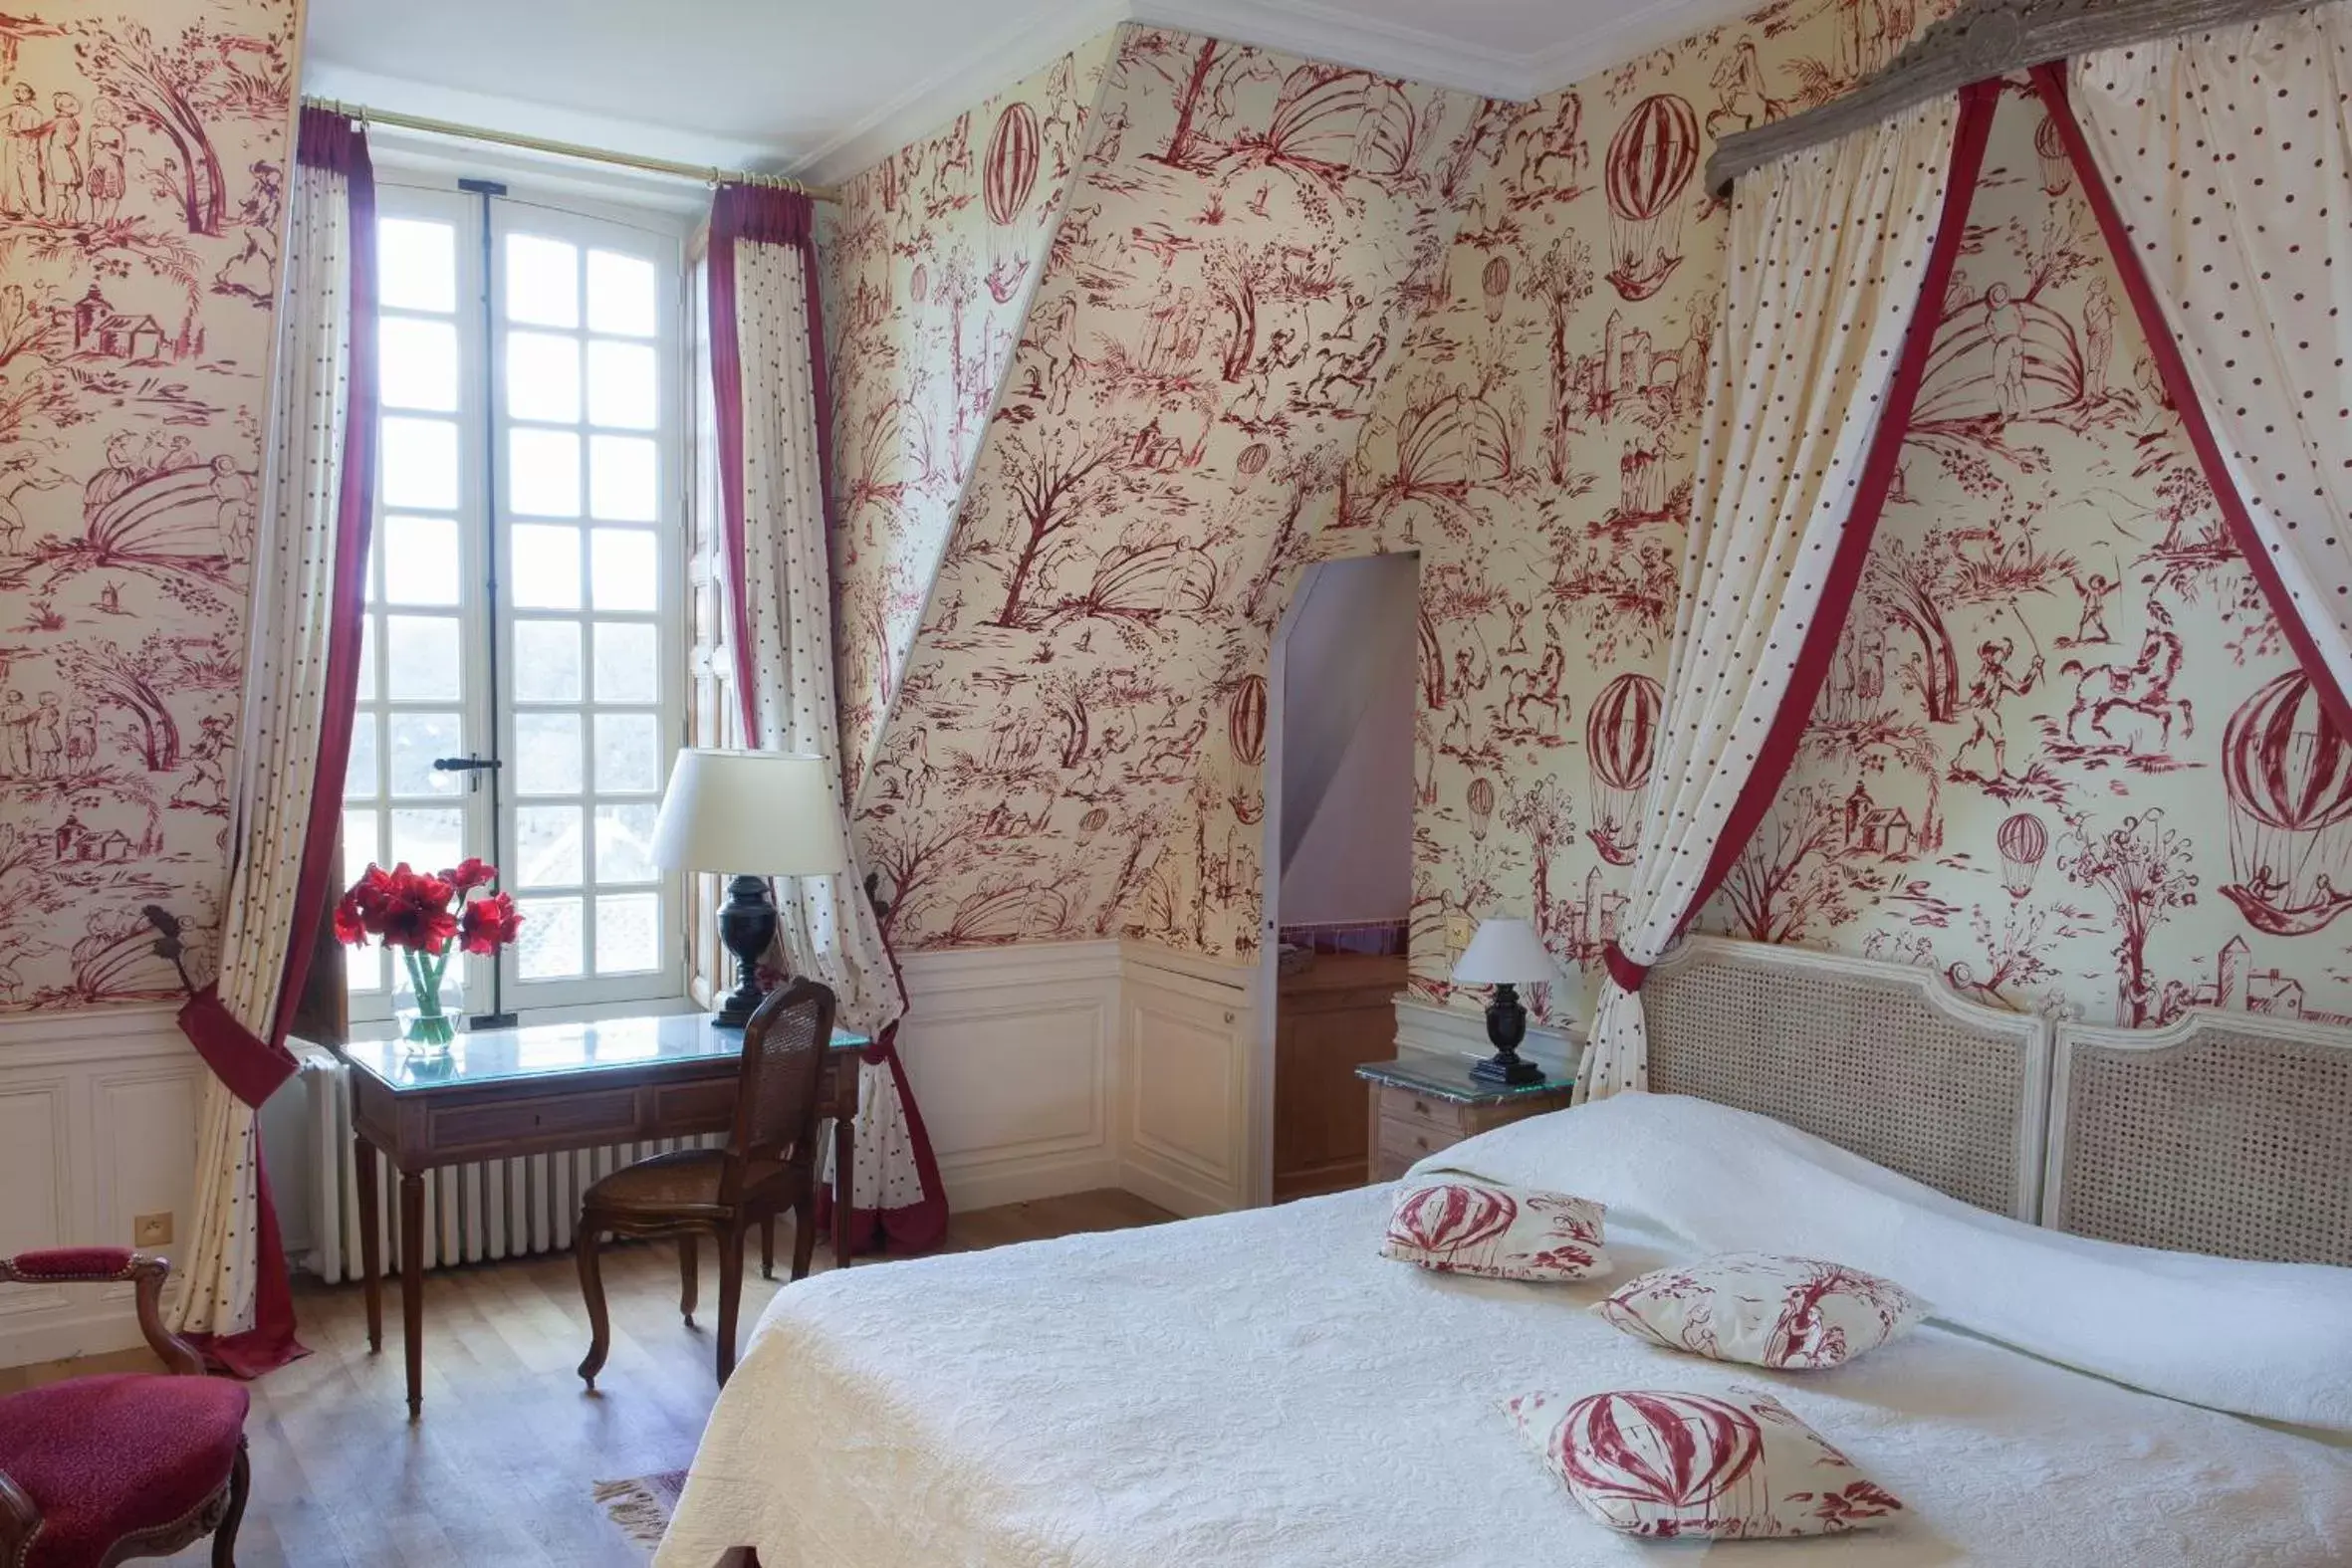 Day, Bed in Château-Hôtel de Bourron